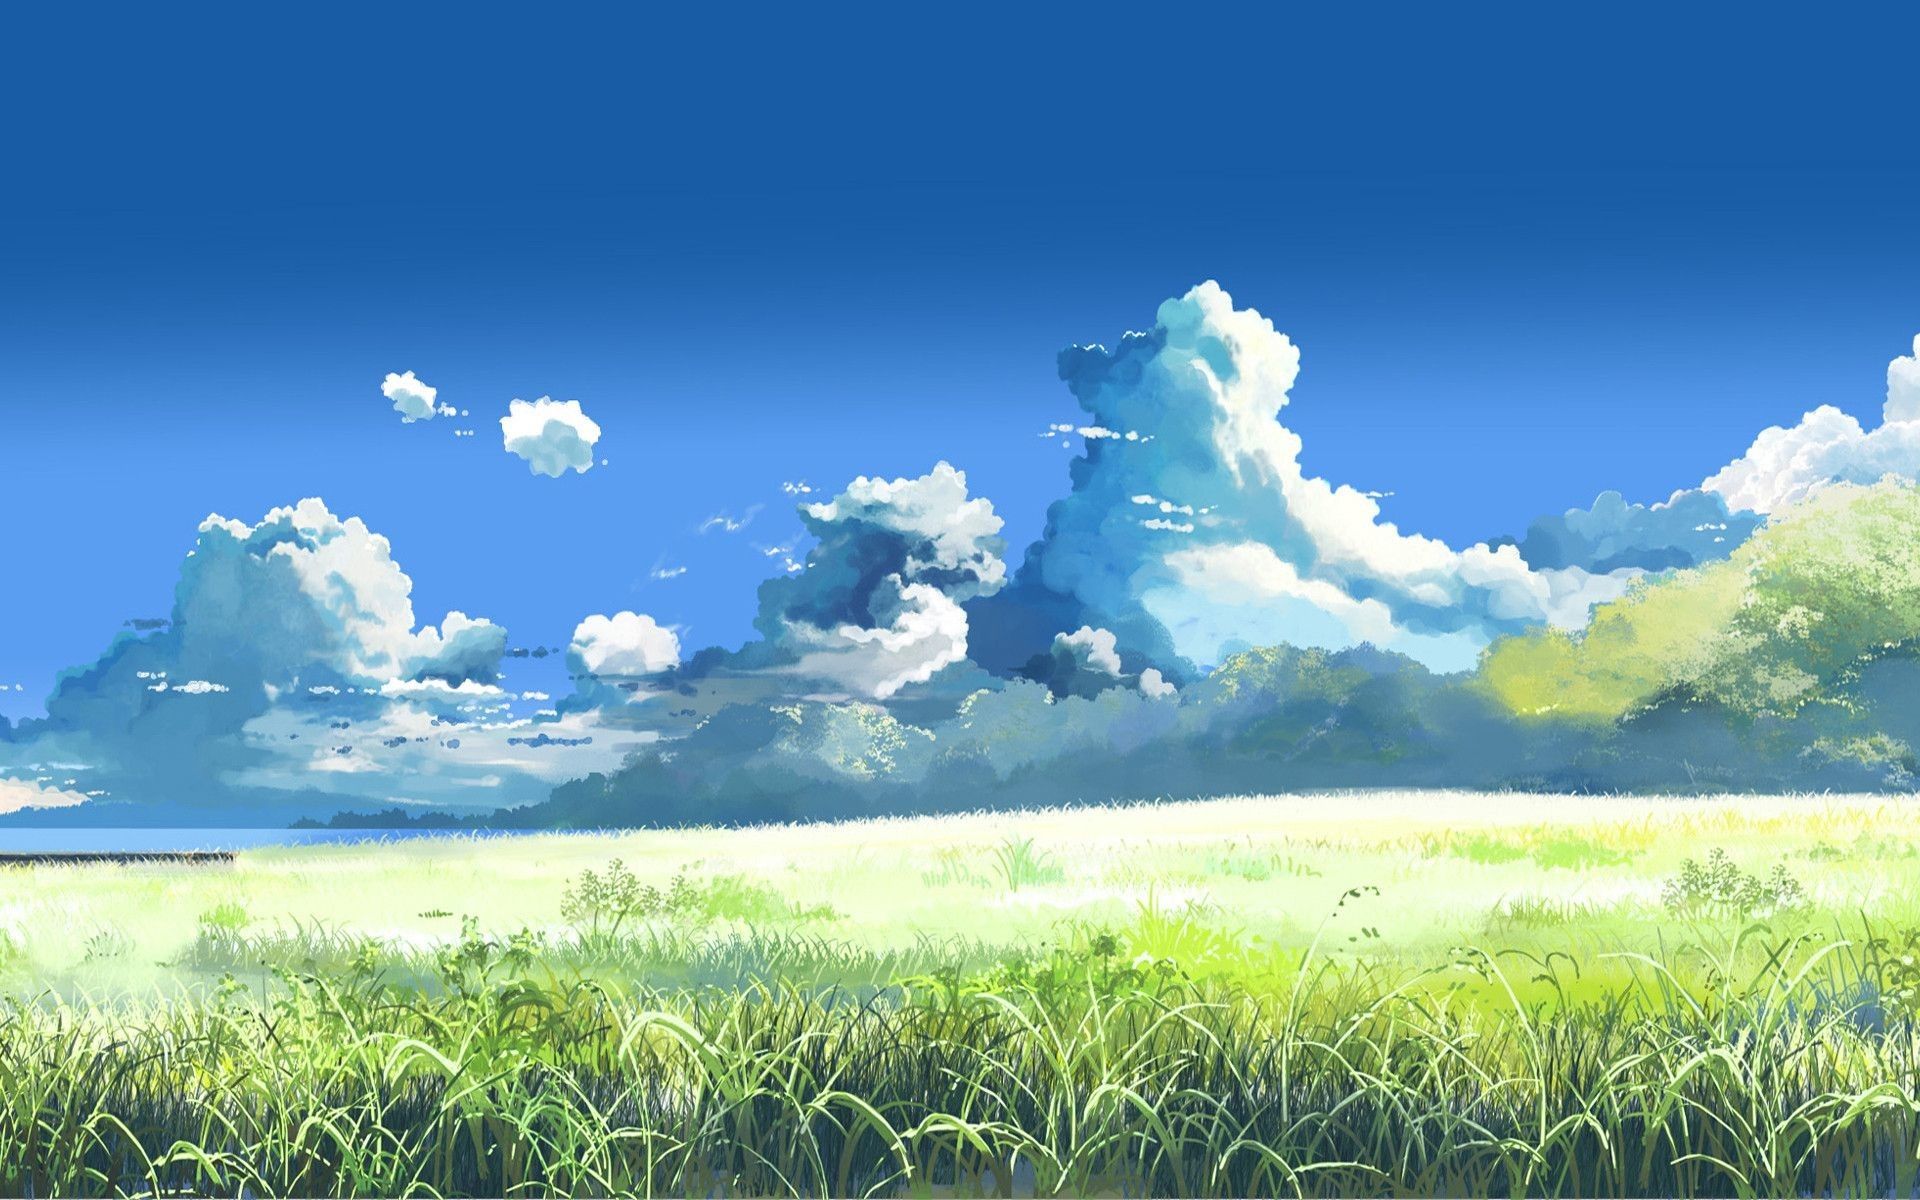 Hình nền anime về các địa điểm trong phim sẽ đưa bạn đến những cảnh đẹp như mơ trong anime. Cùng tham gia chuyến phiêu lưu và khám phá thế giới đầy màu sắc của anime nào!